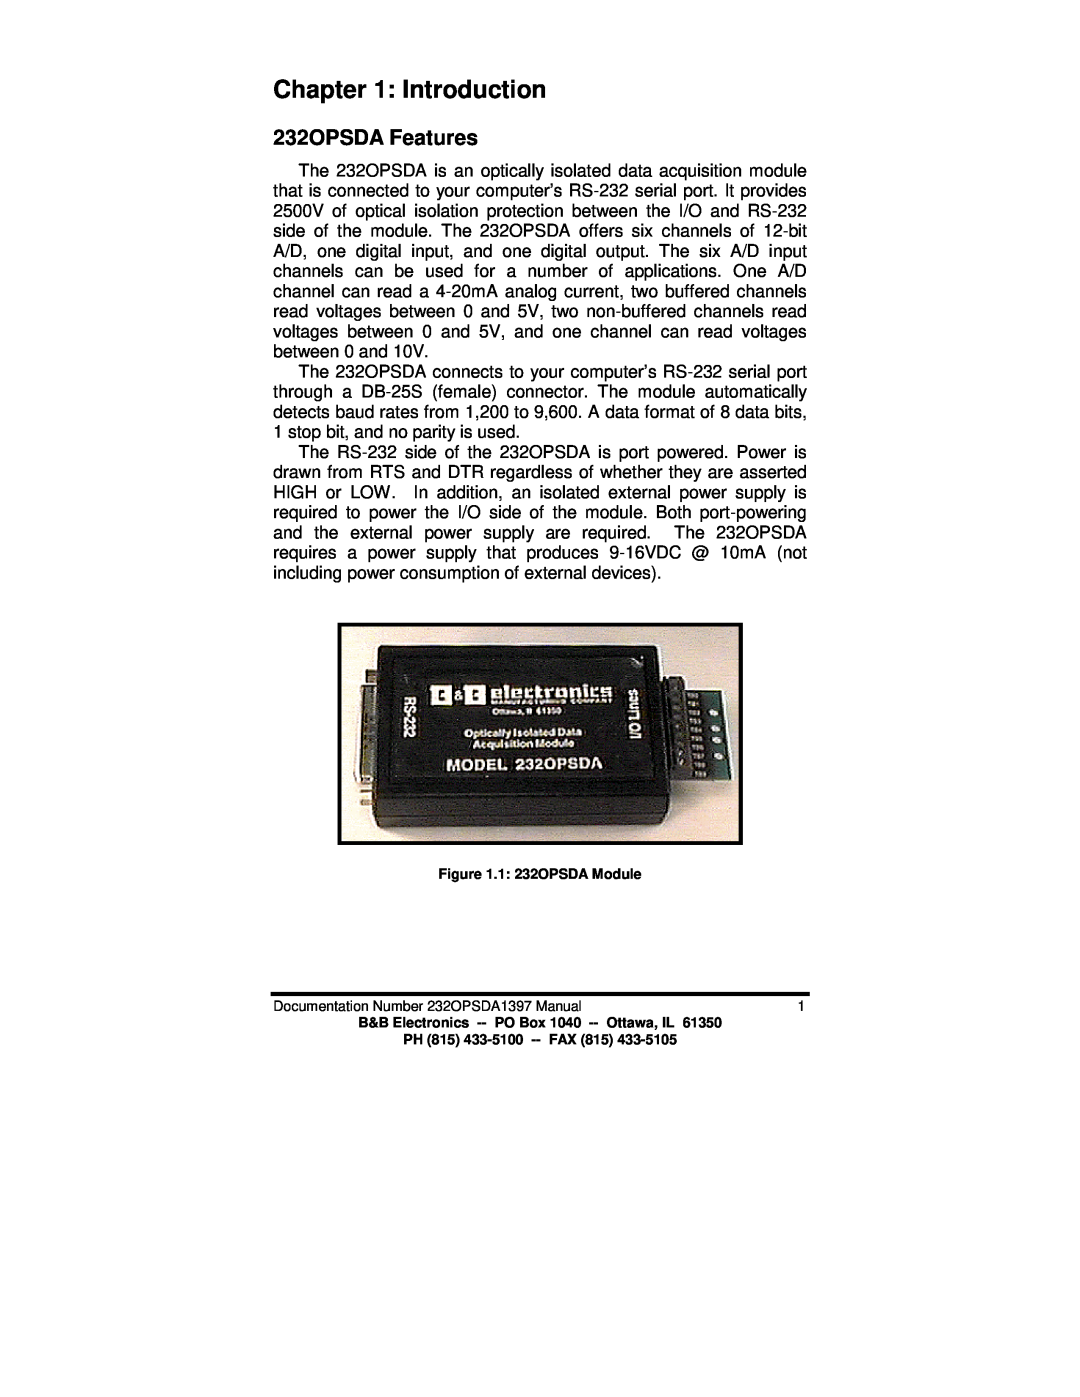 B&B Electronics manual Introduction, 232OPSDA Features 